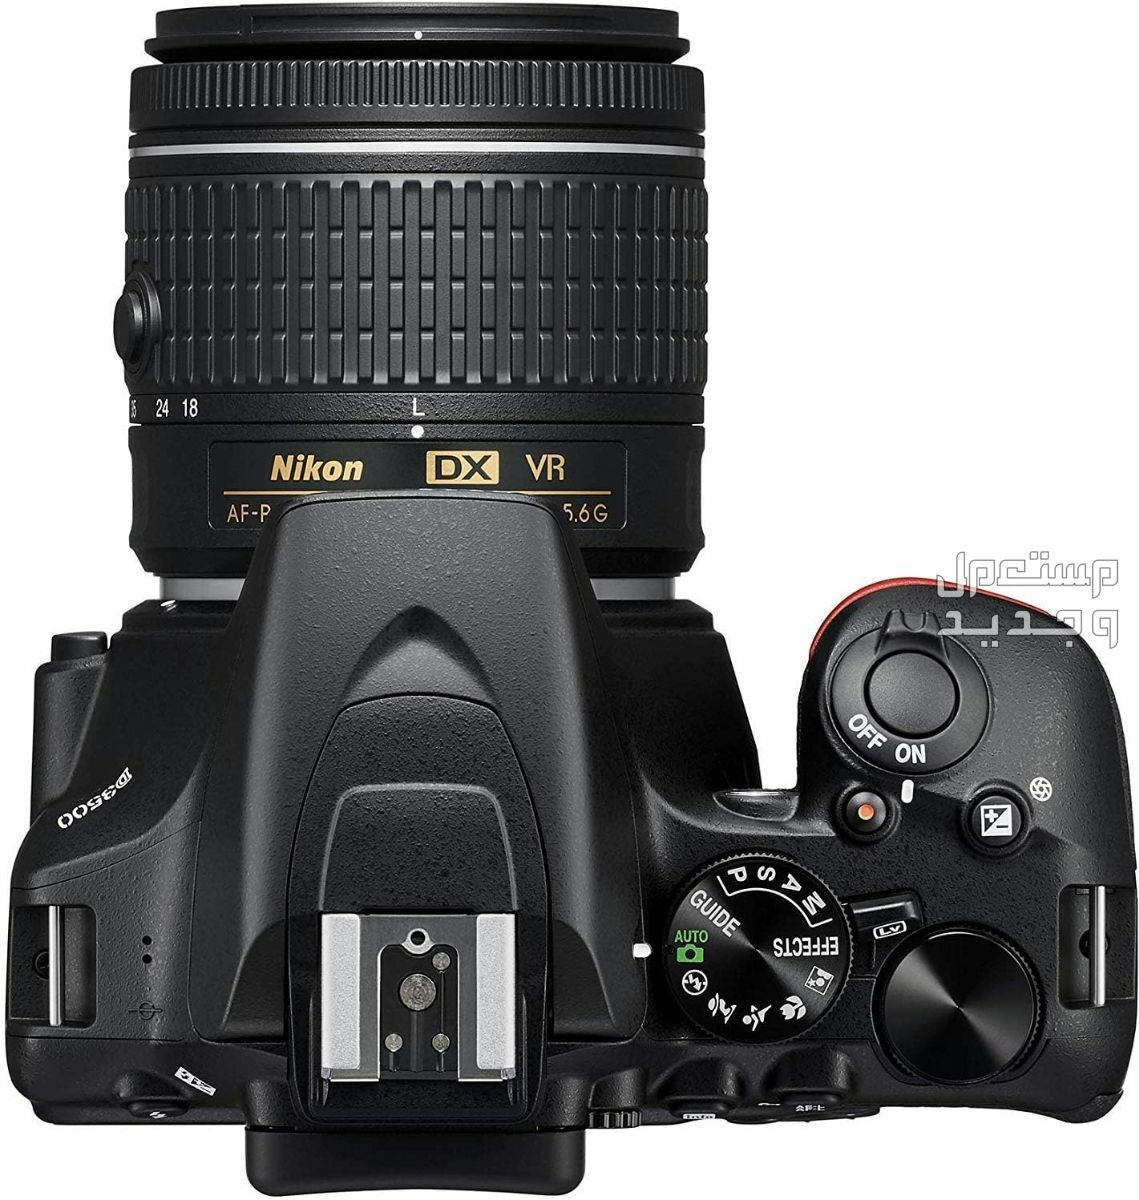 10 كاميرات تصوير ماركات عالمية بأسعار رخيصة في مصر سعر كاميرا Nikon D3500